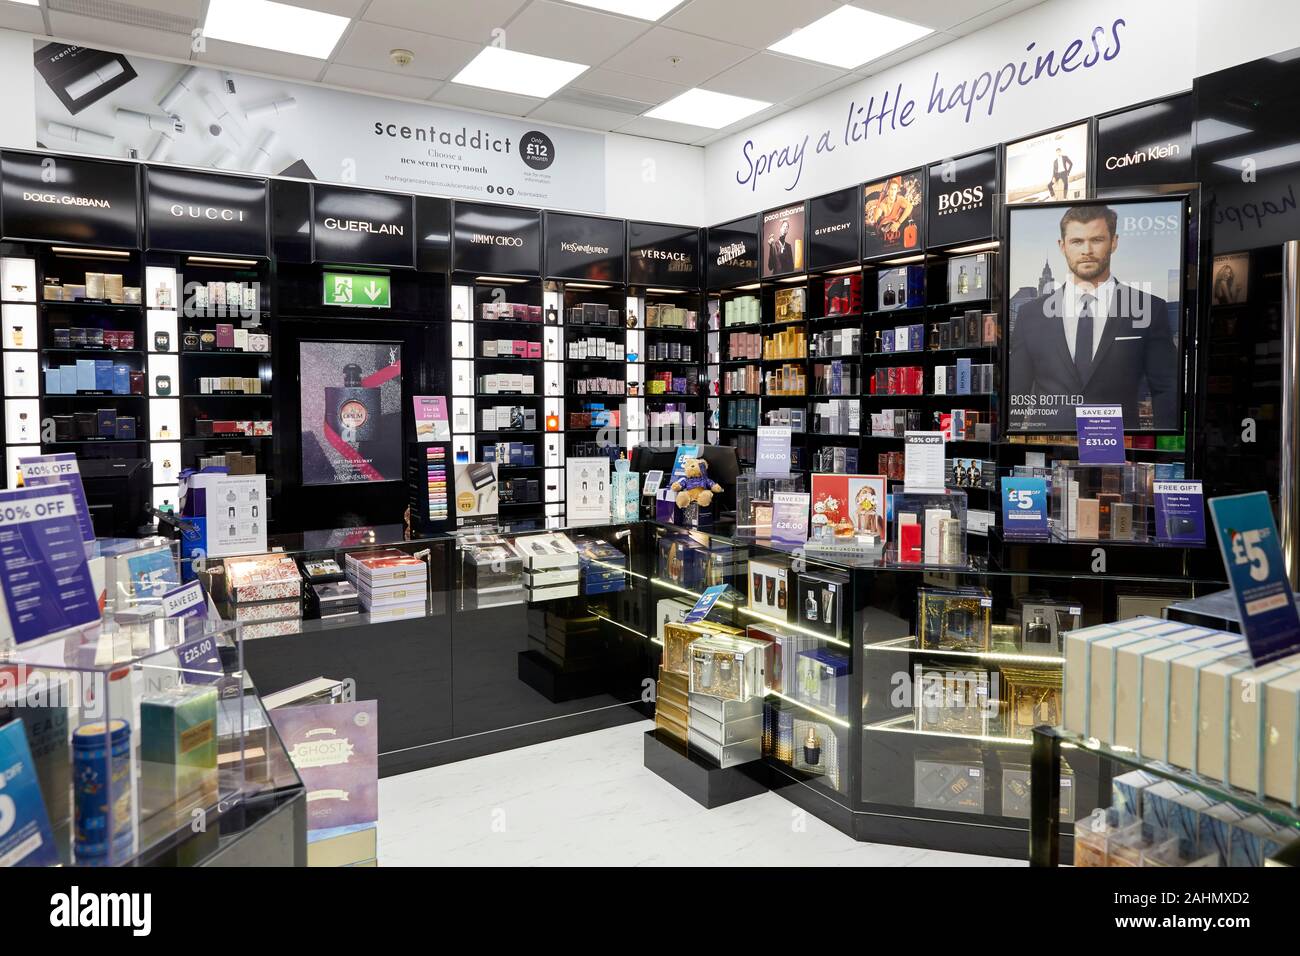 La fragranza si apre il negozio in uscita di Lowry a MediaCity, Salford Quays. Foto Stock